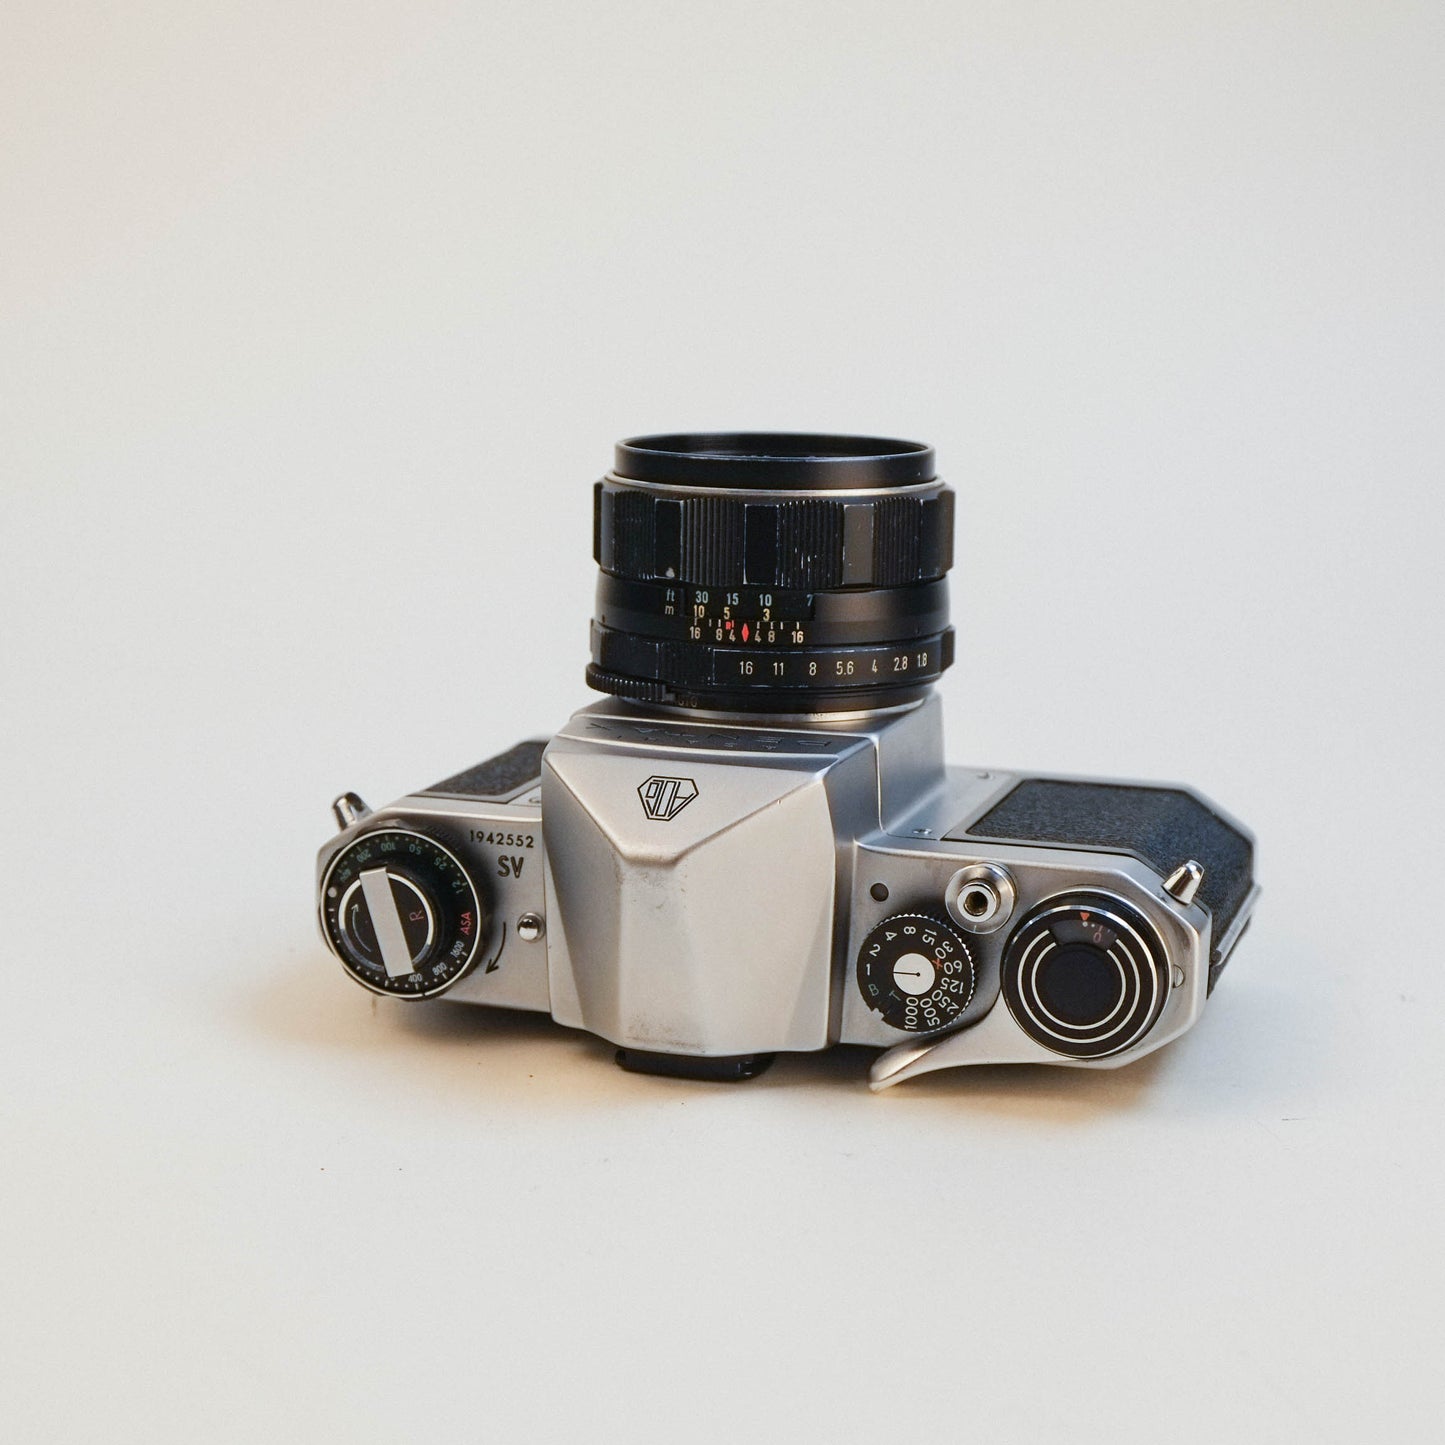 Pentax SV /w Super-Takumar 55mm f1.8 [35mm kit]